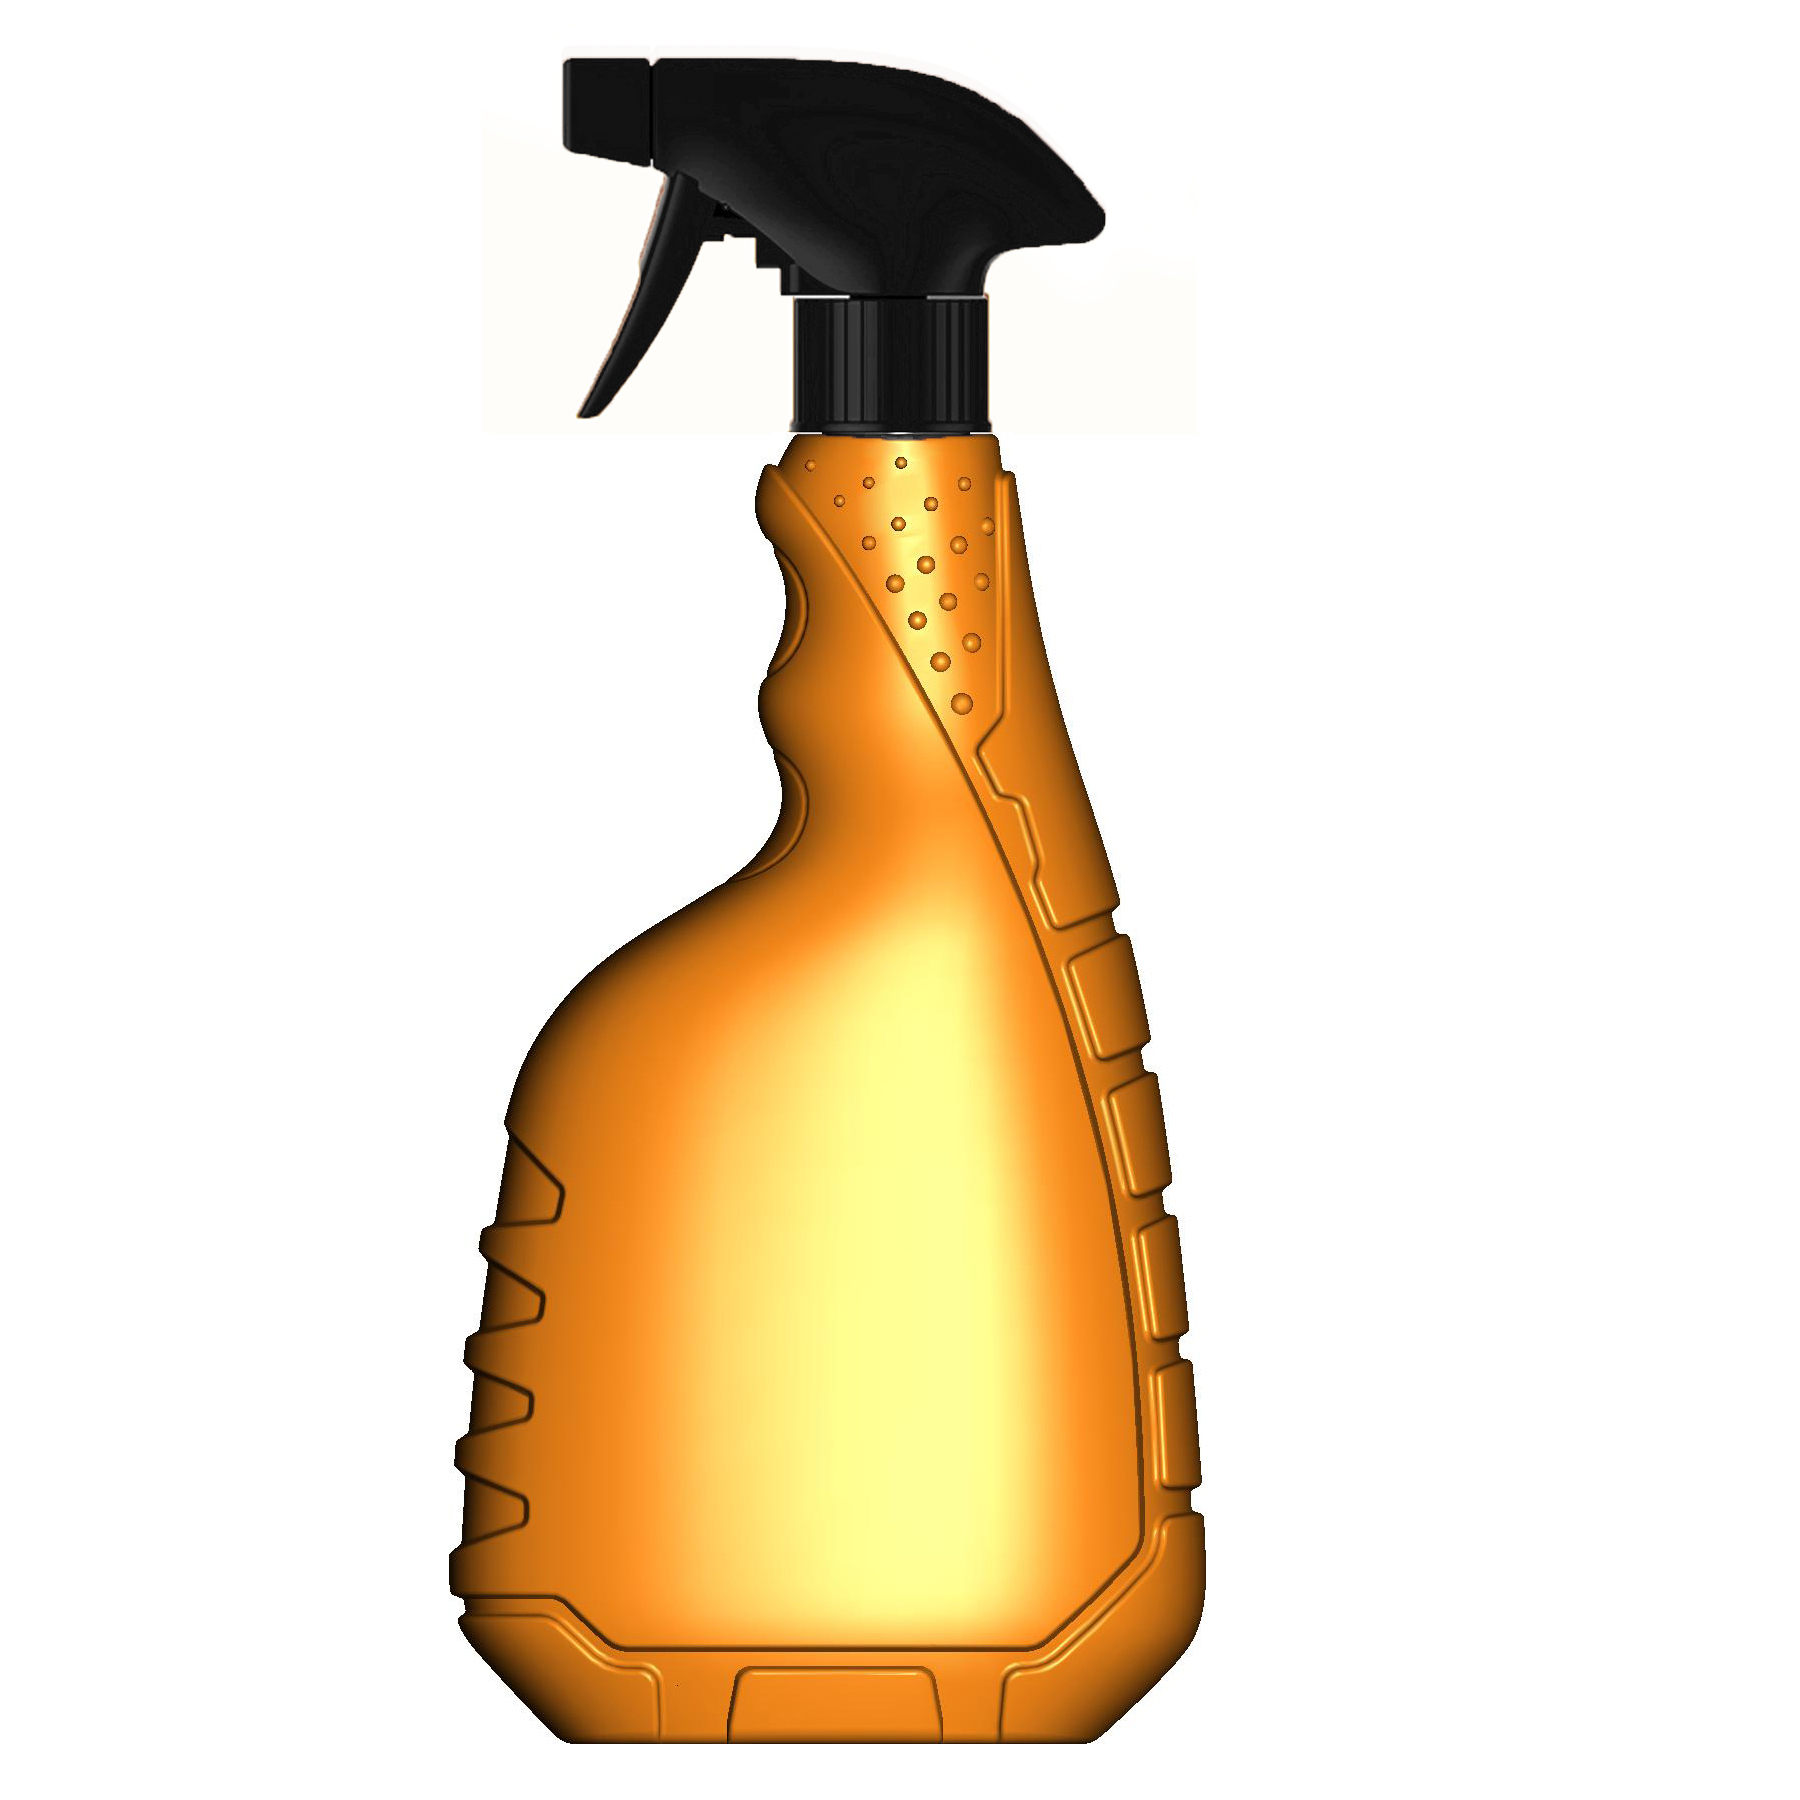 业利塑瓶 500ml喷枪瓶 S-056 汽车清洗剂瓶 hdpe塑料瓶 PVC瓶子 喷壶